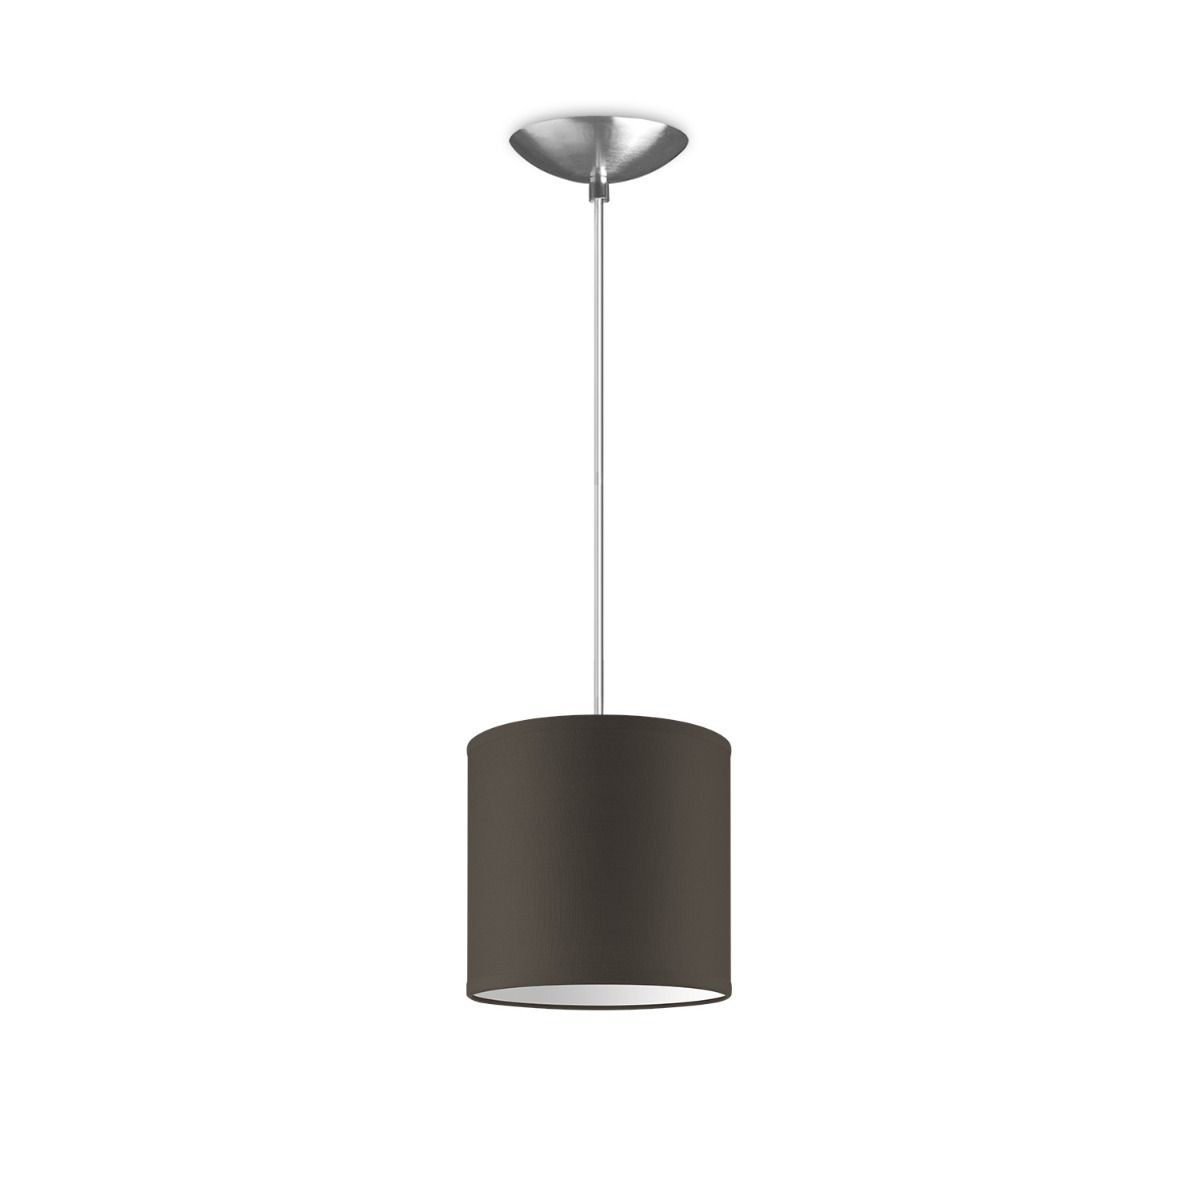 Light depot - hanglamp basic bling Ø 16 cm - taupe - Outlet